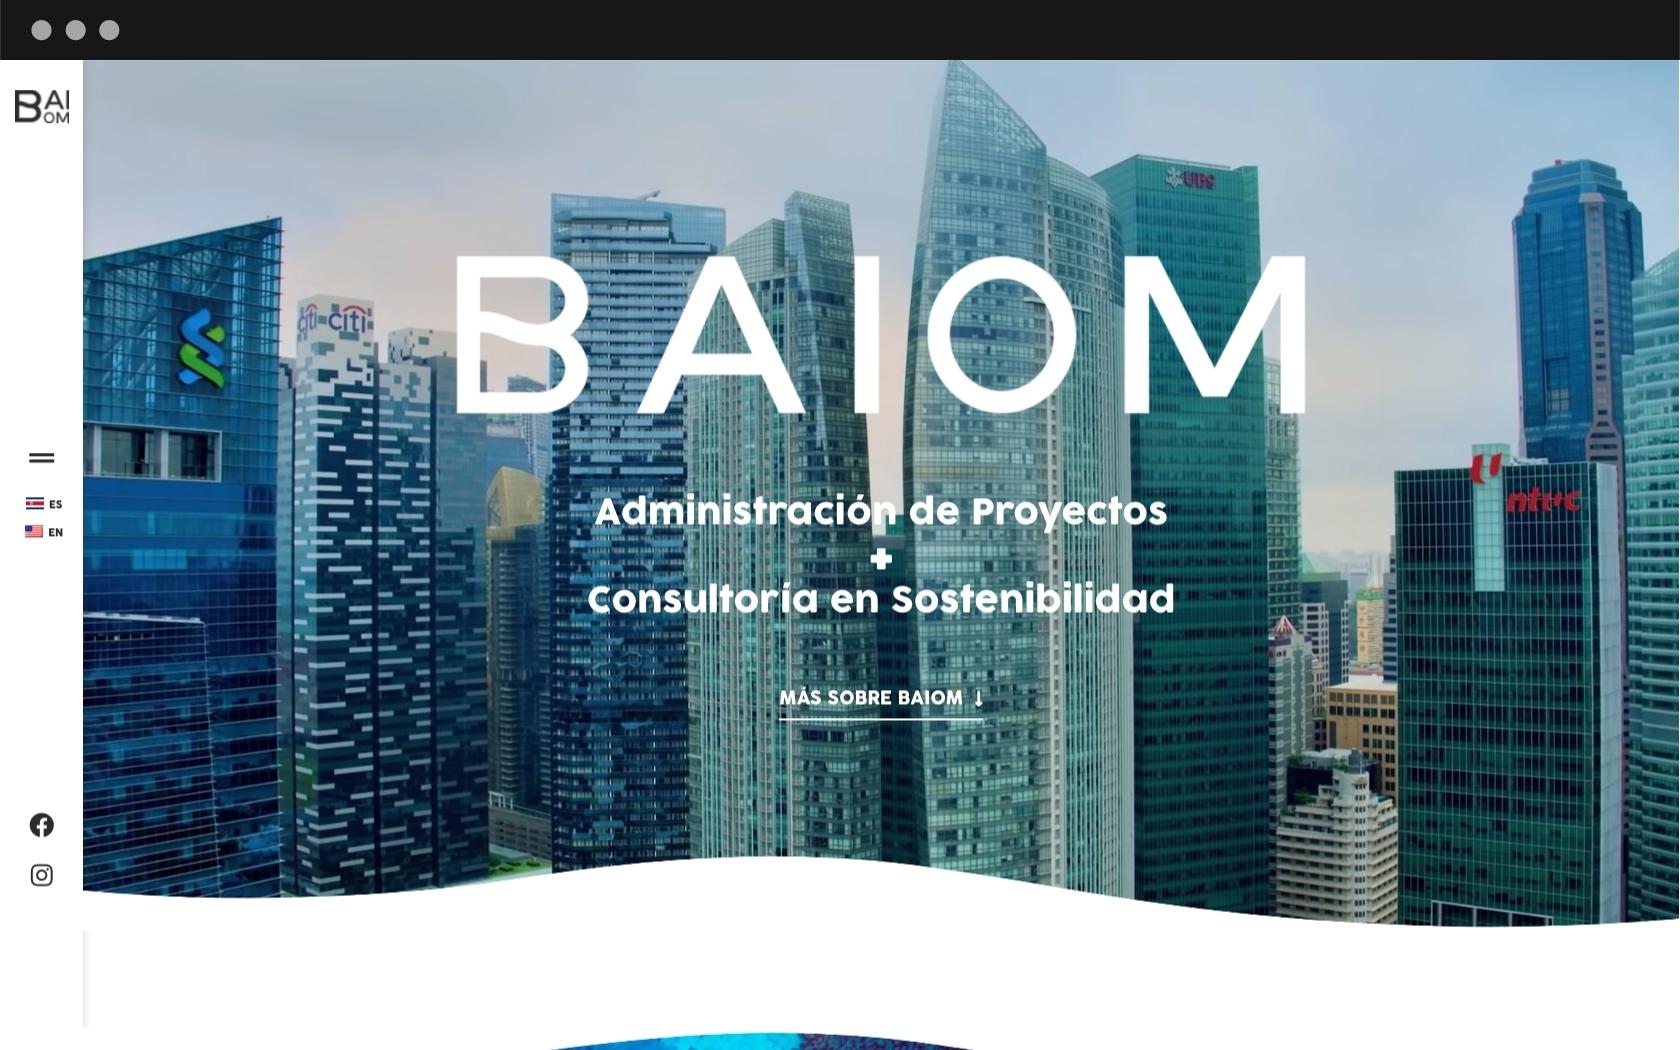 BAIOM's website design